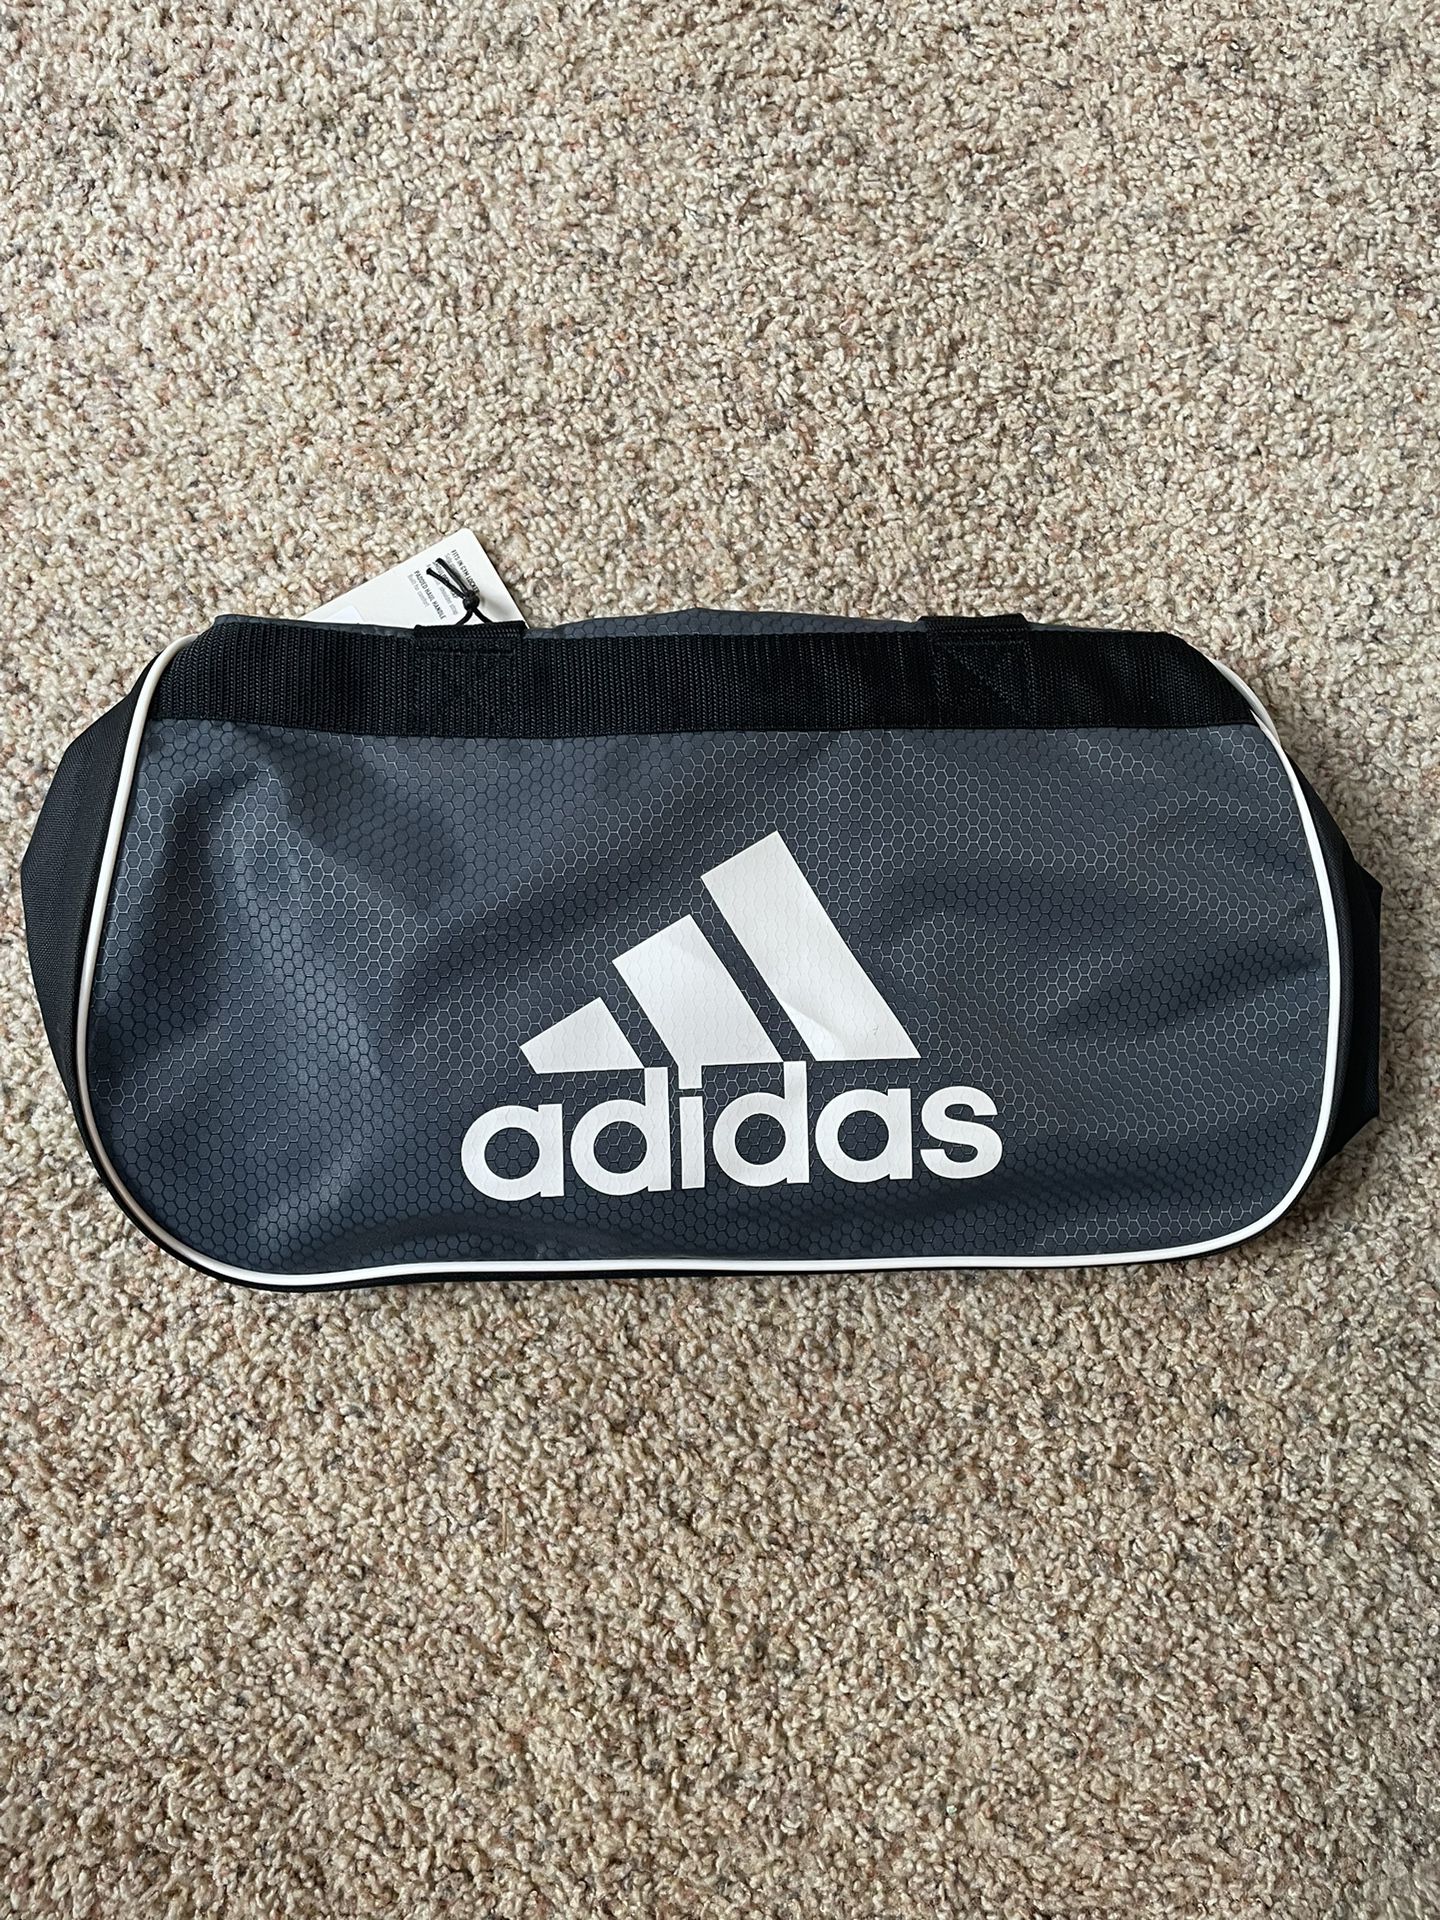 Adidas Gymbag (Small)*Brand New*